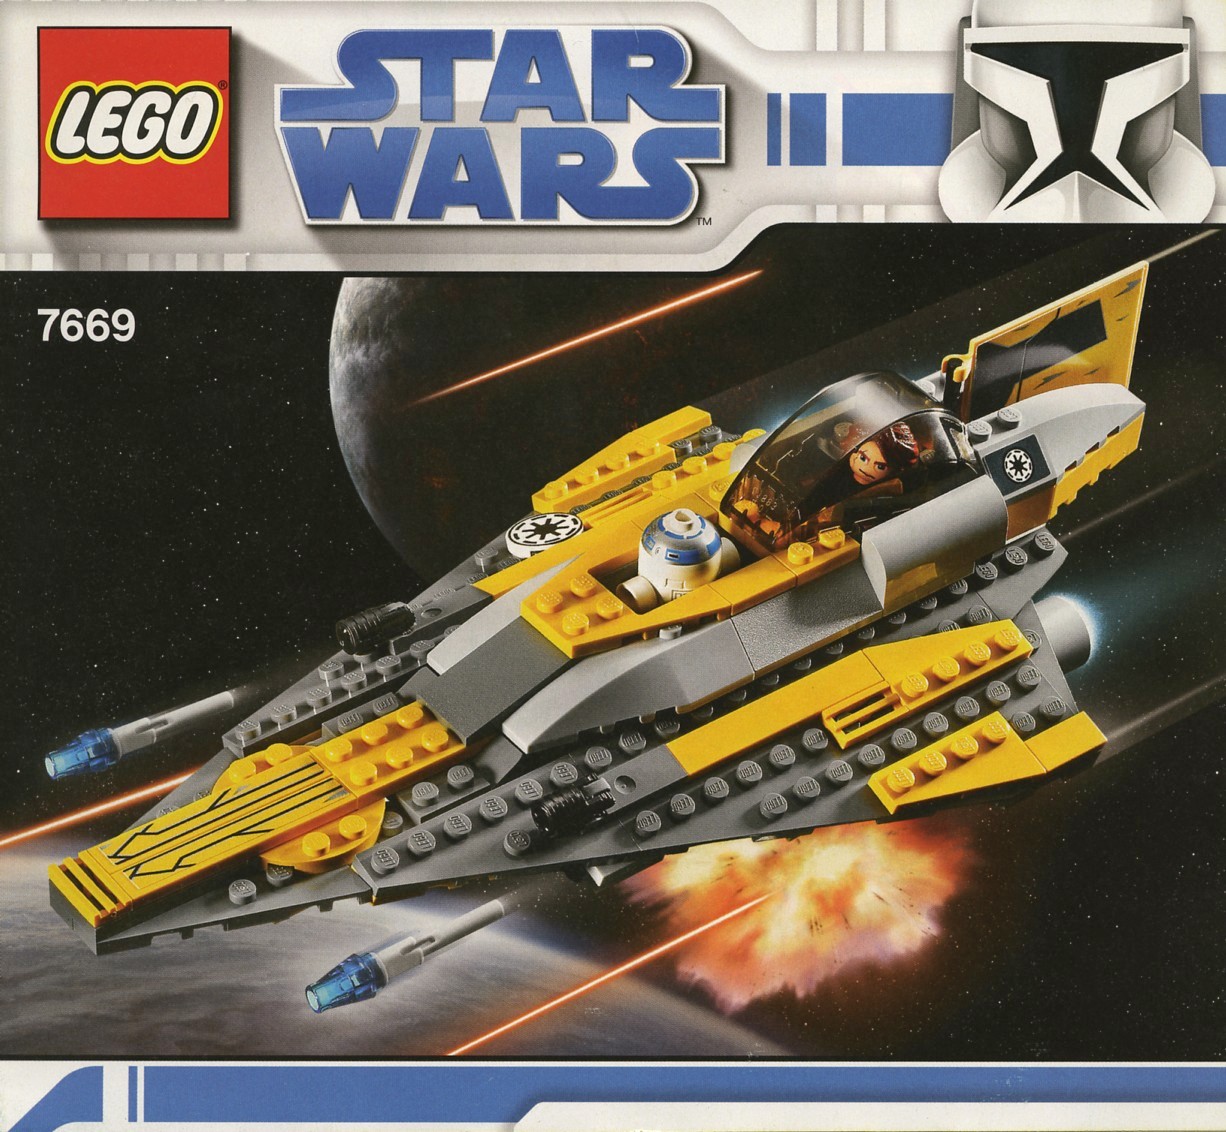 LEGO Star Wars The Wars | Brickset